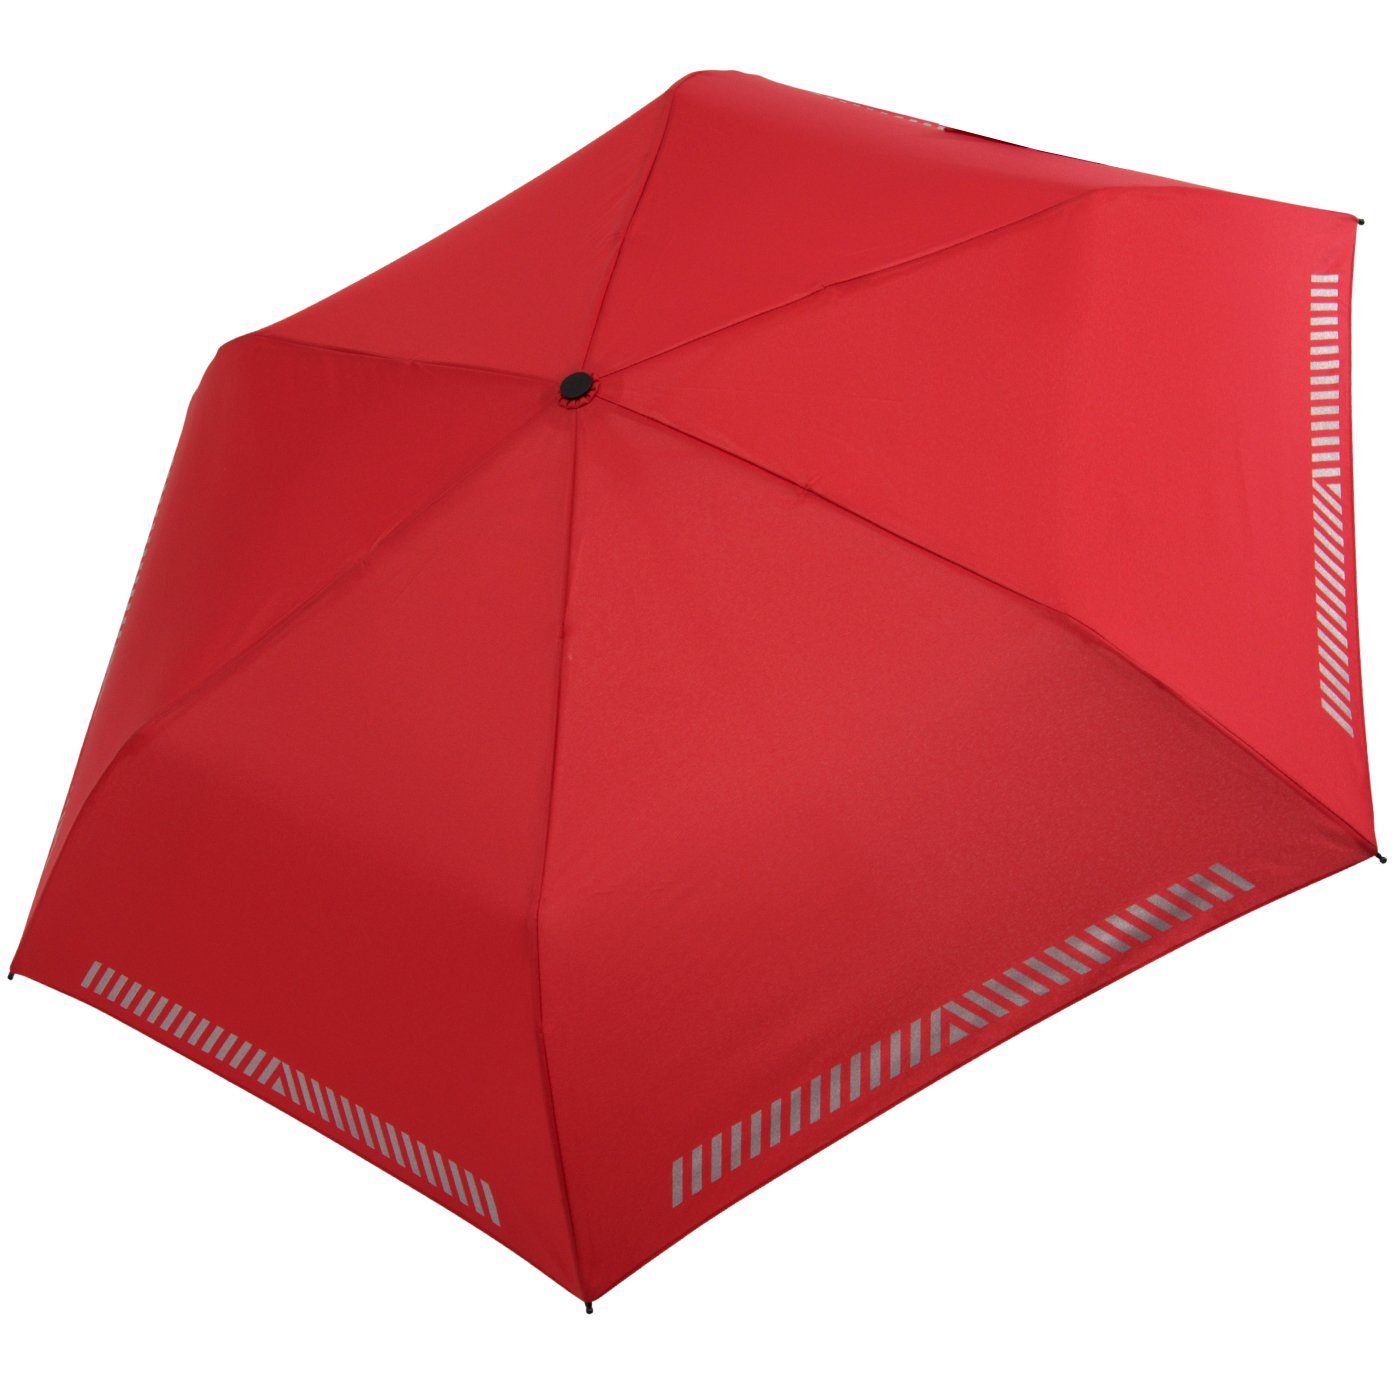 iX-brella Taschenregenschirm Kinderschirm mit Auf-Zu-Automatik, Reflex-Streifen rot durch reflektierend, Sicherheit 